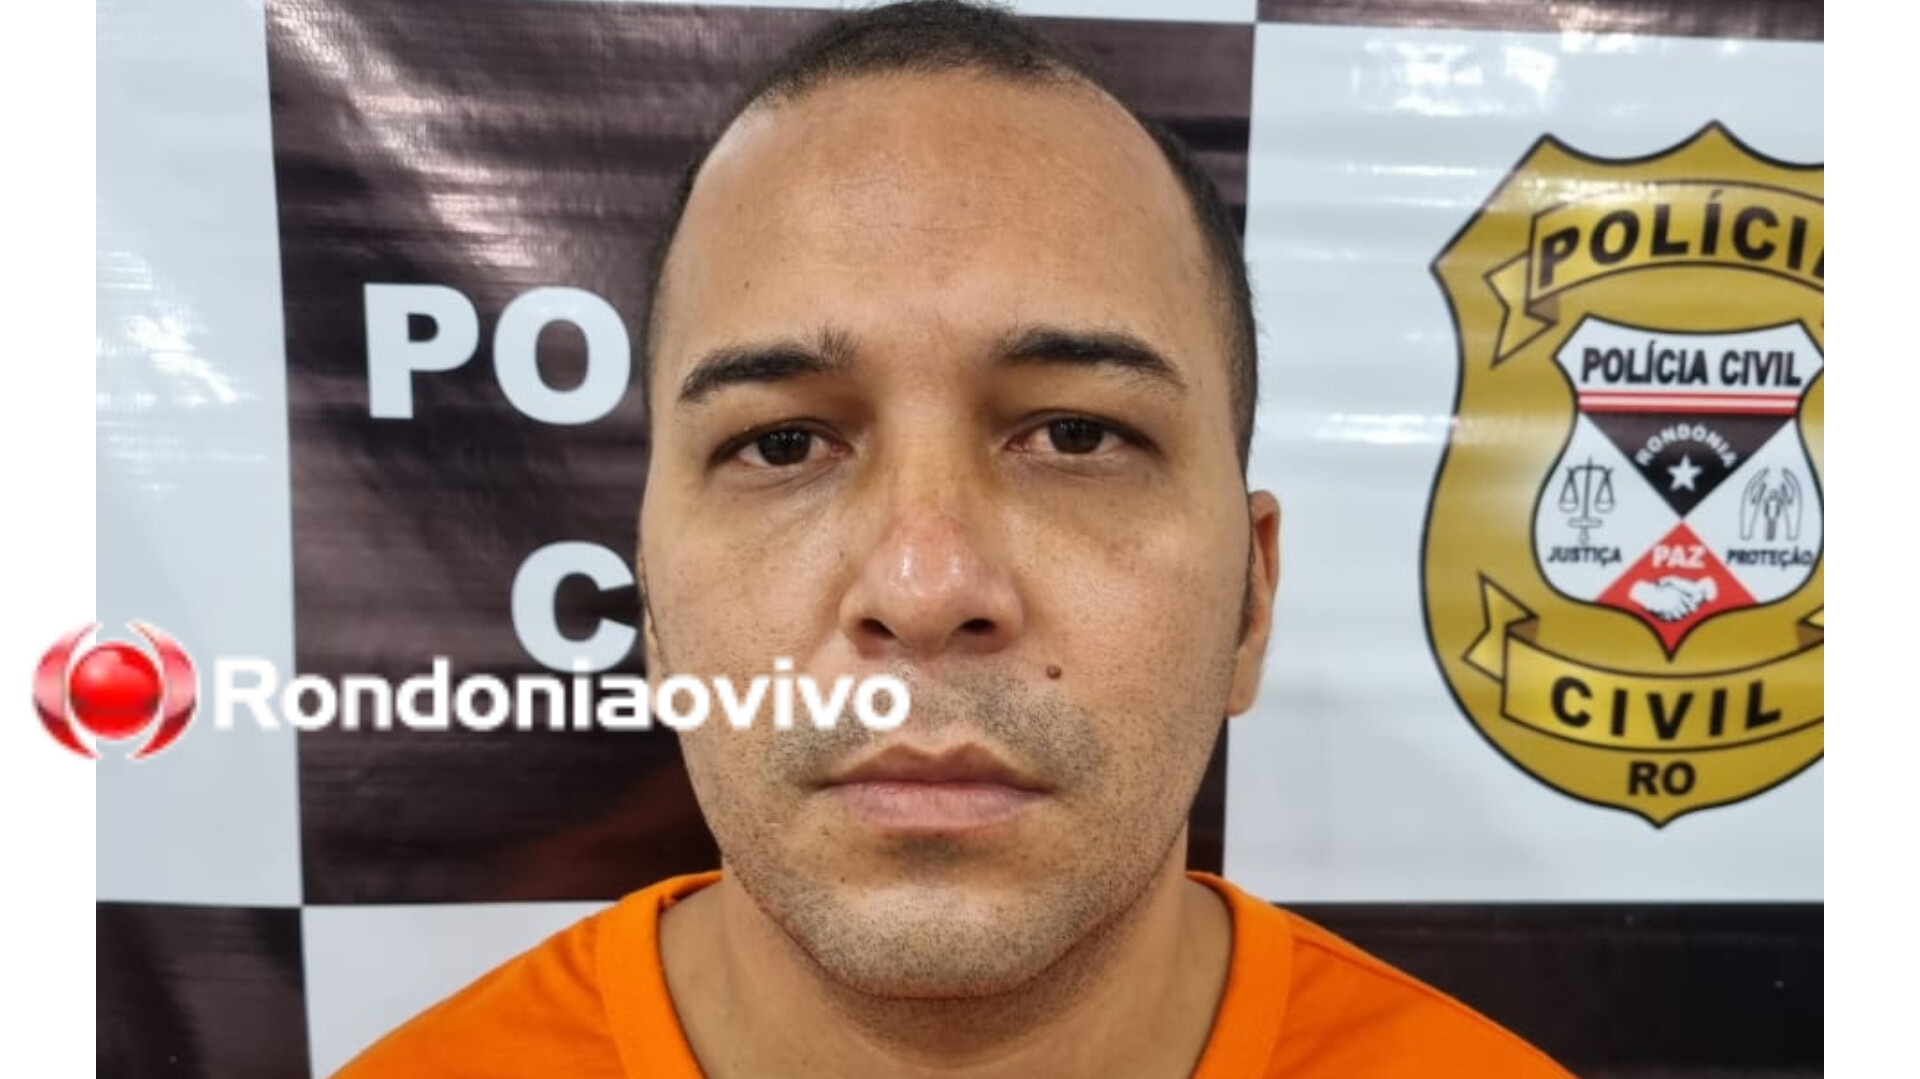 GOLPISTA DO AMOR: Acusado de assaltar mulheres é reconhecido por mais vítimas em Porto Velho 